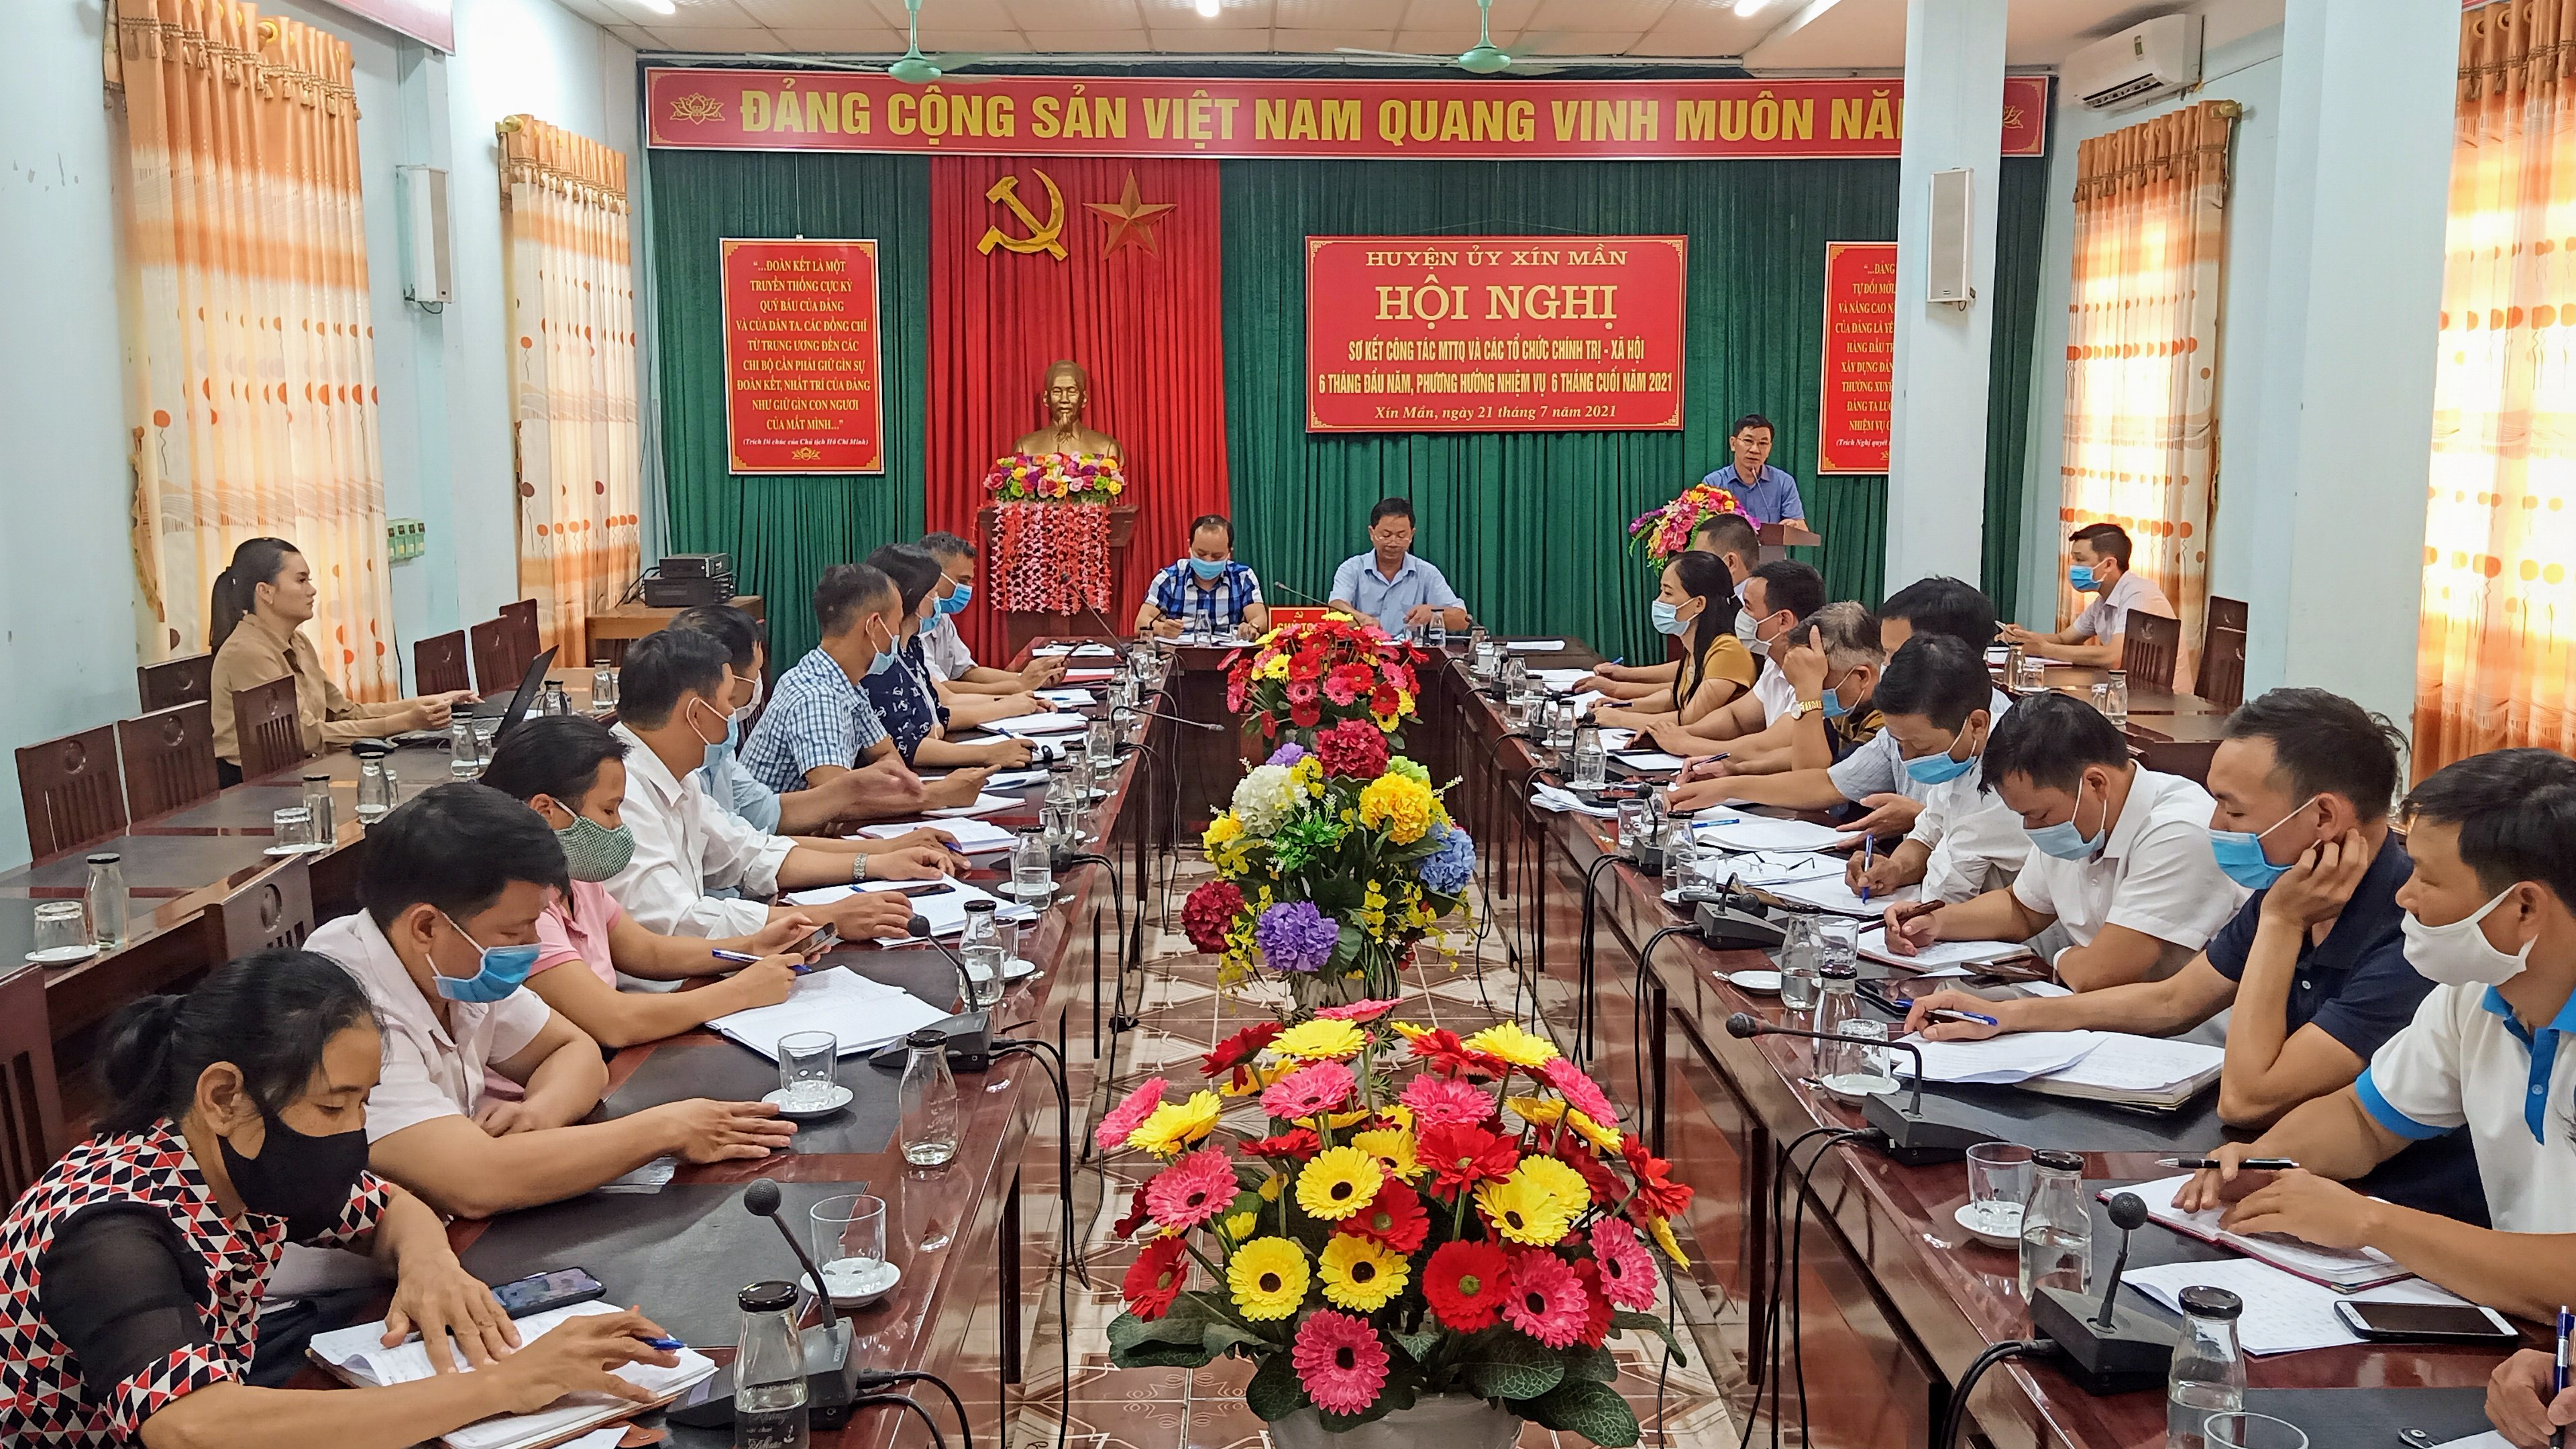 Hội nghị sơ kết công tác MTTQ và các tổ chức chính trị xã hội huyện Xín Mần